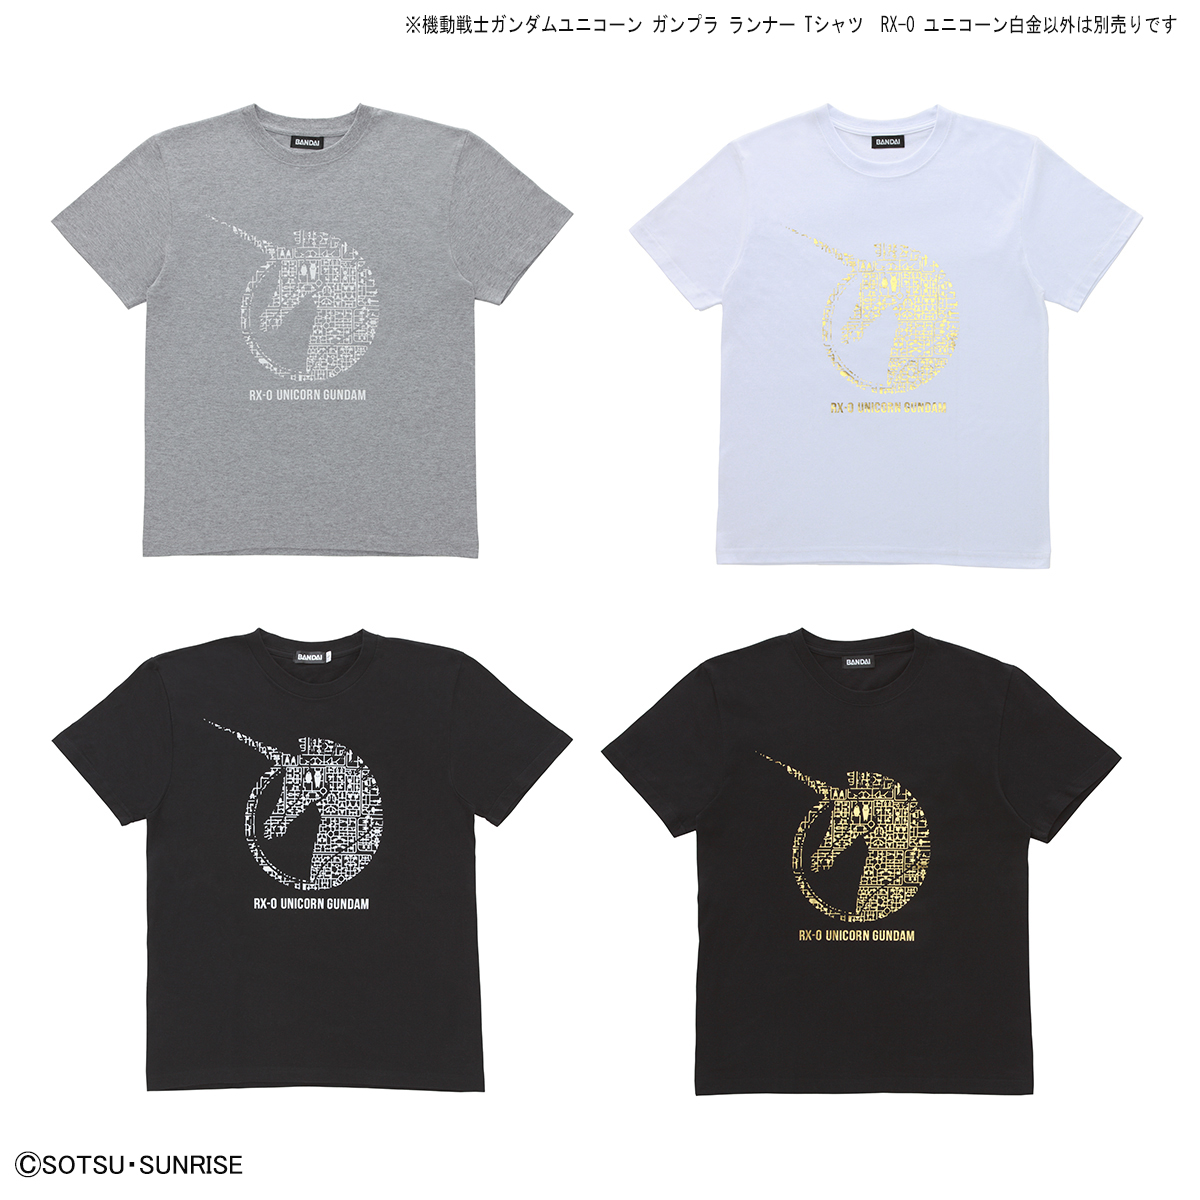 機動戦士ガンダムユニコーン ガンプラ ランナー Tシャツ  RX-0 ユニコーン白金 商品画像